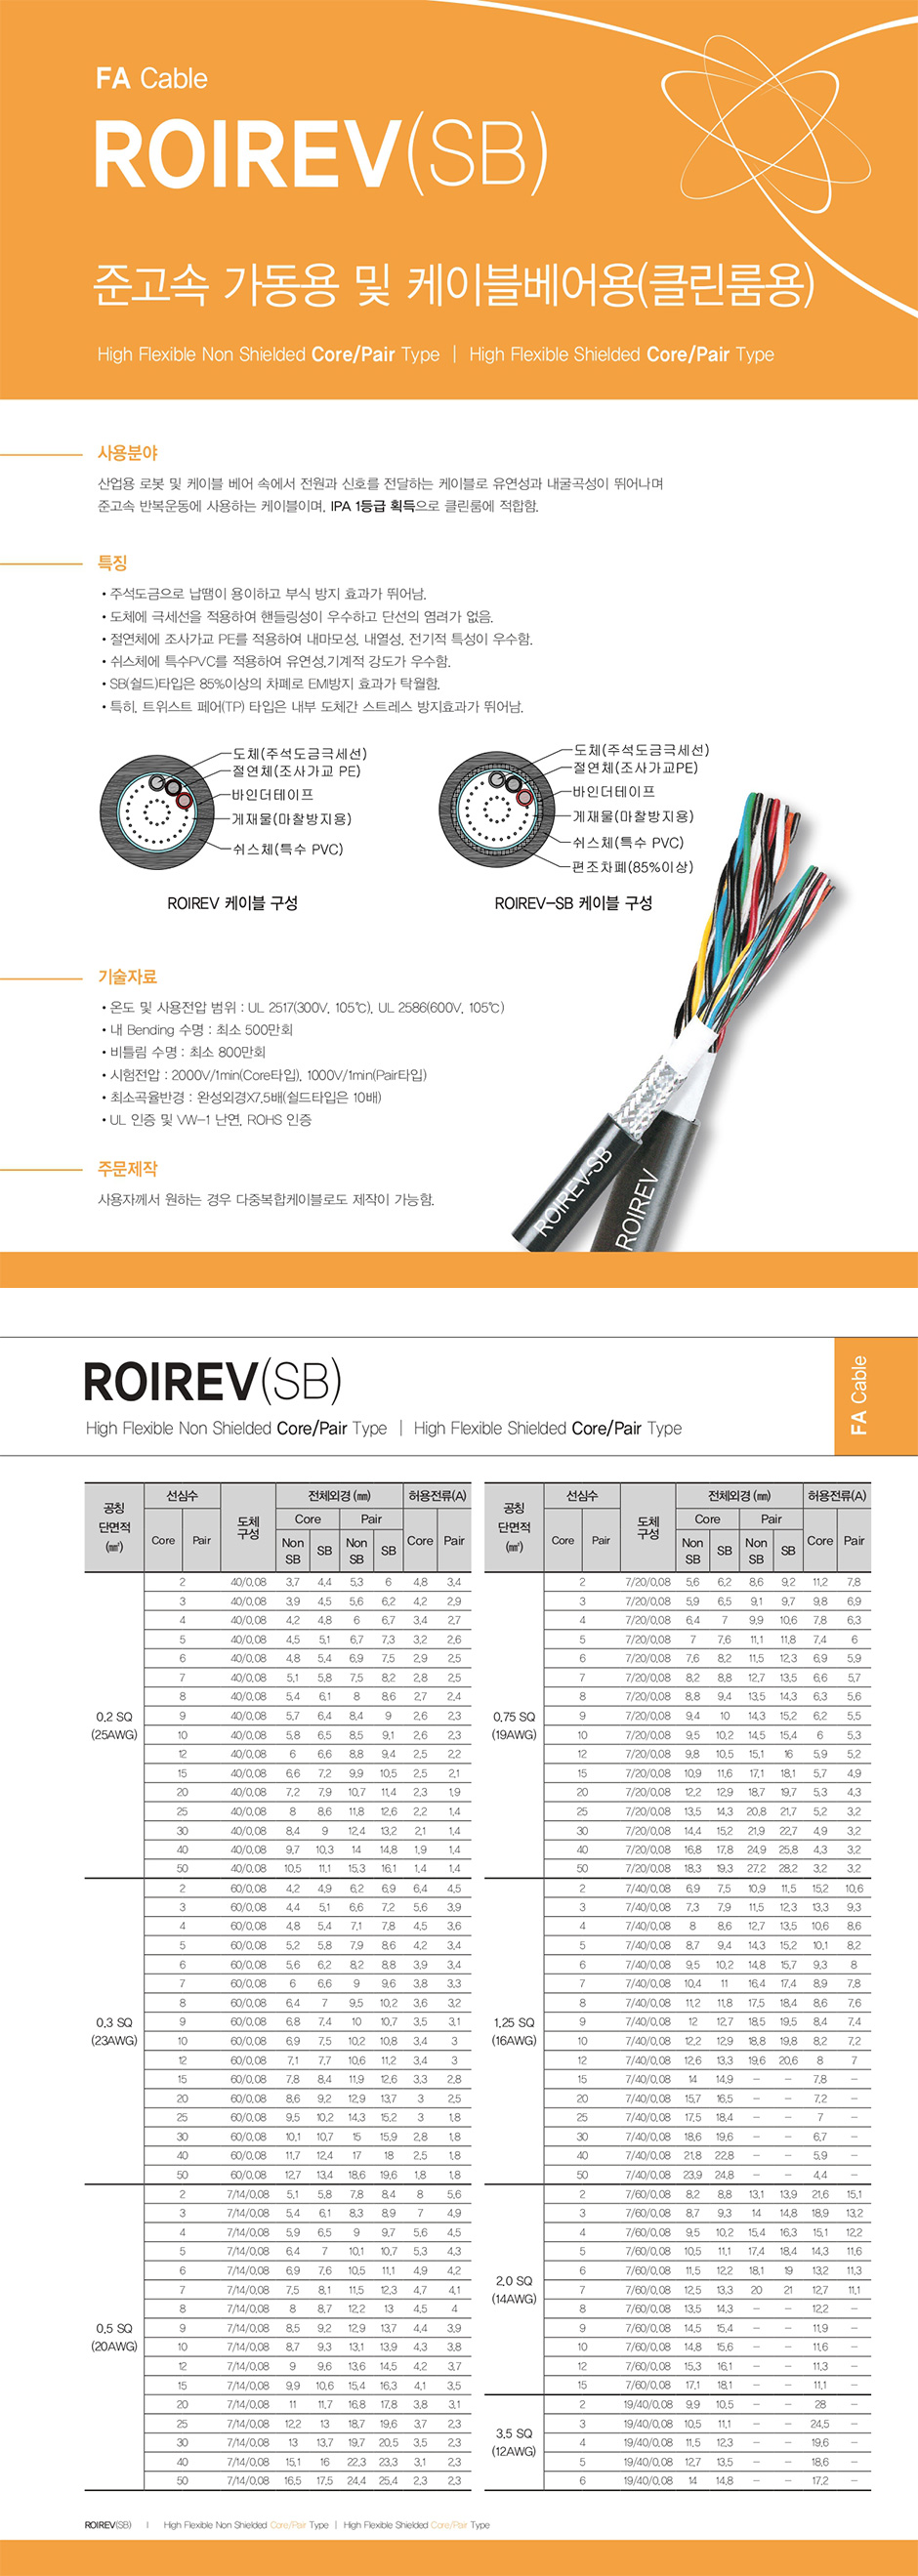 FA Cable : ROIREV(SB)